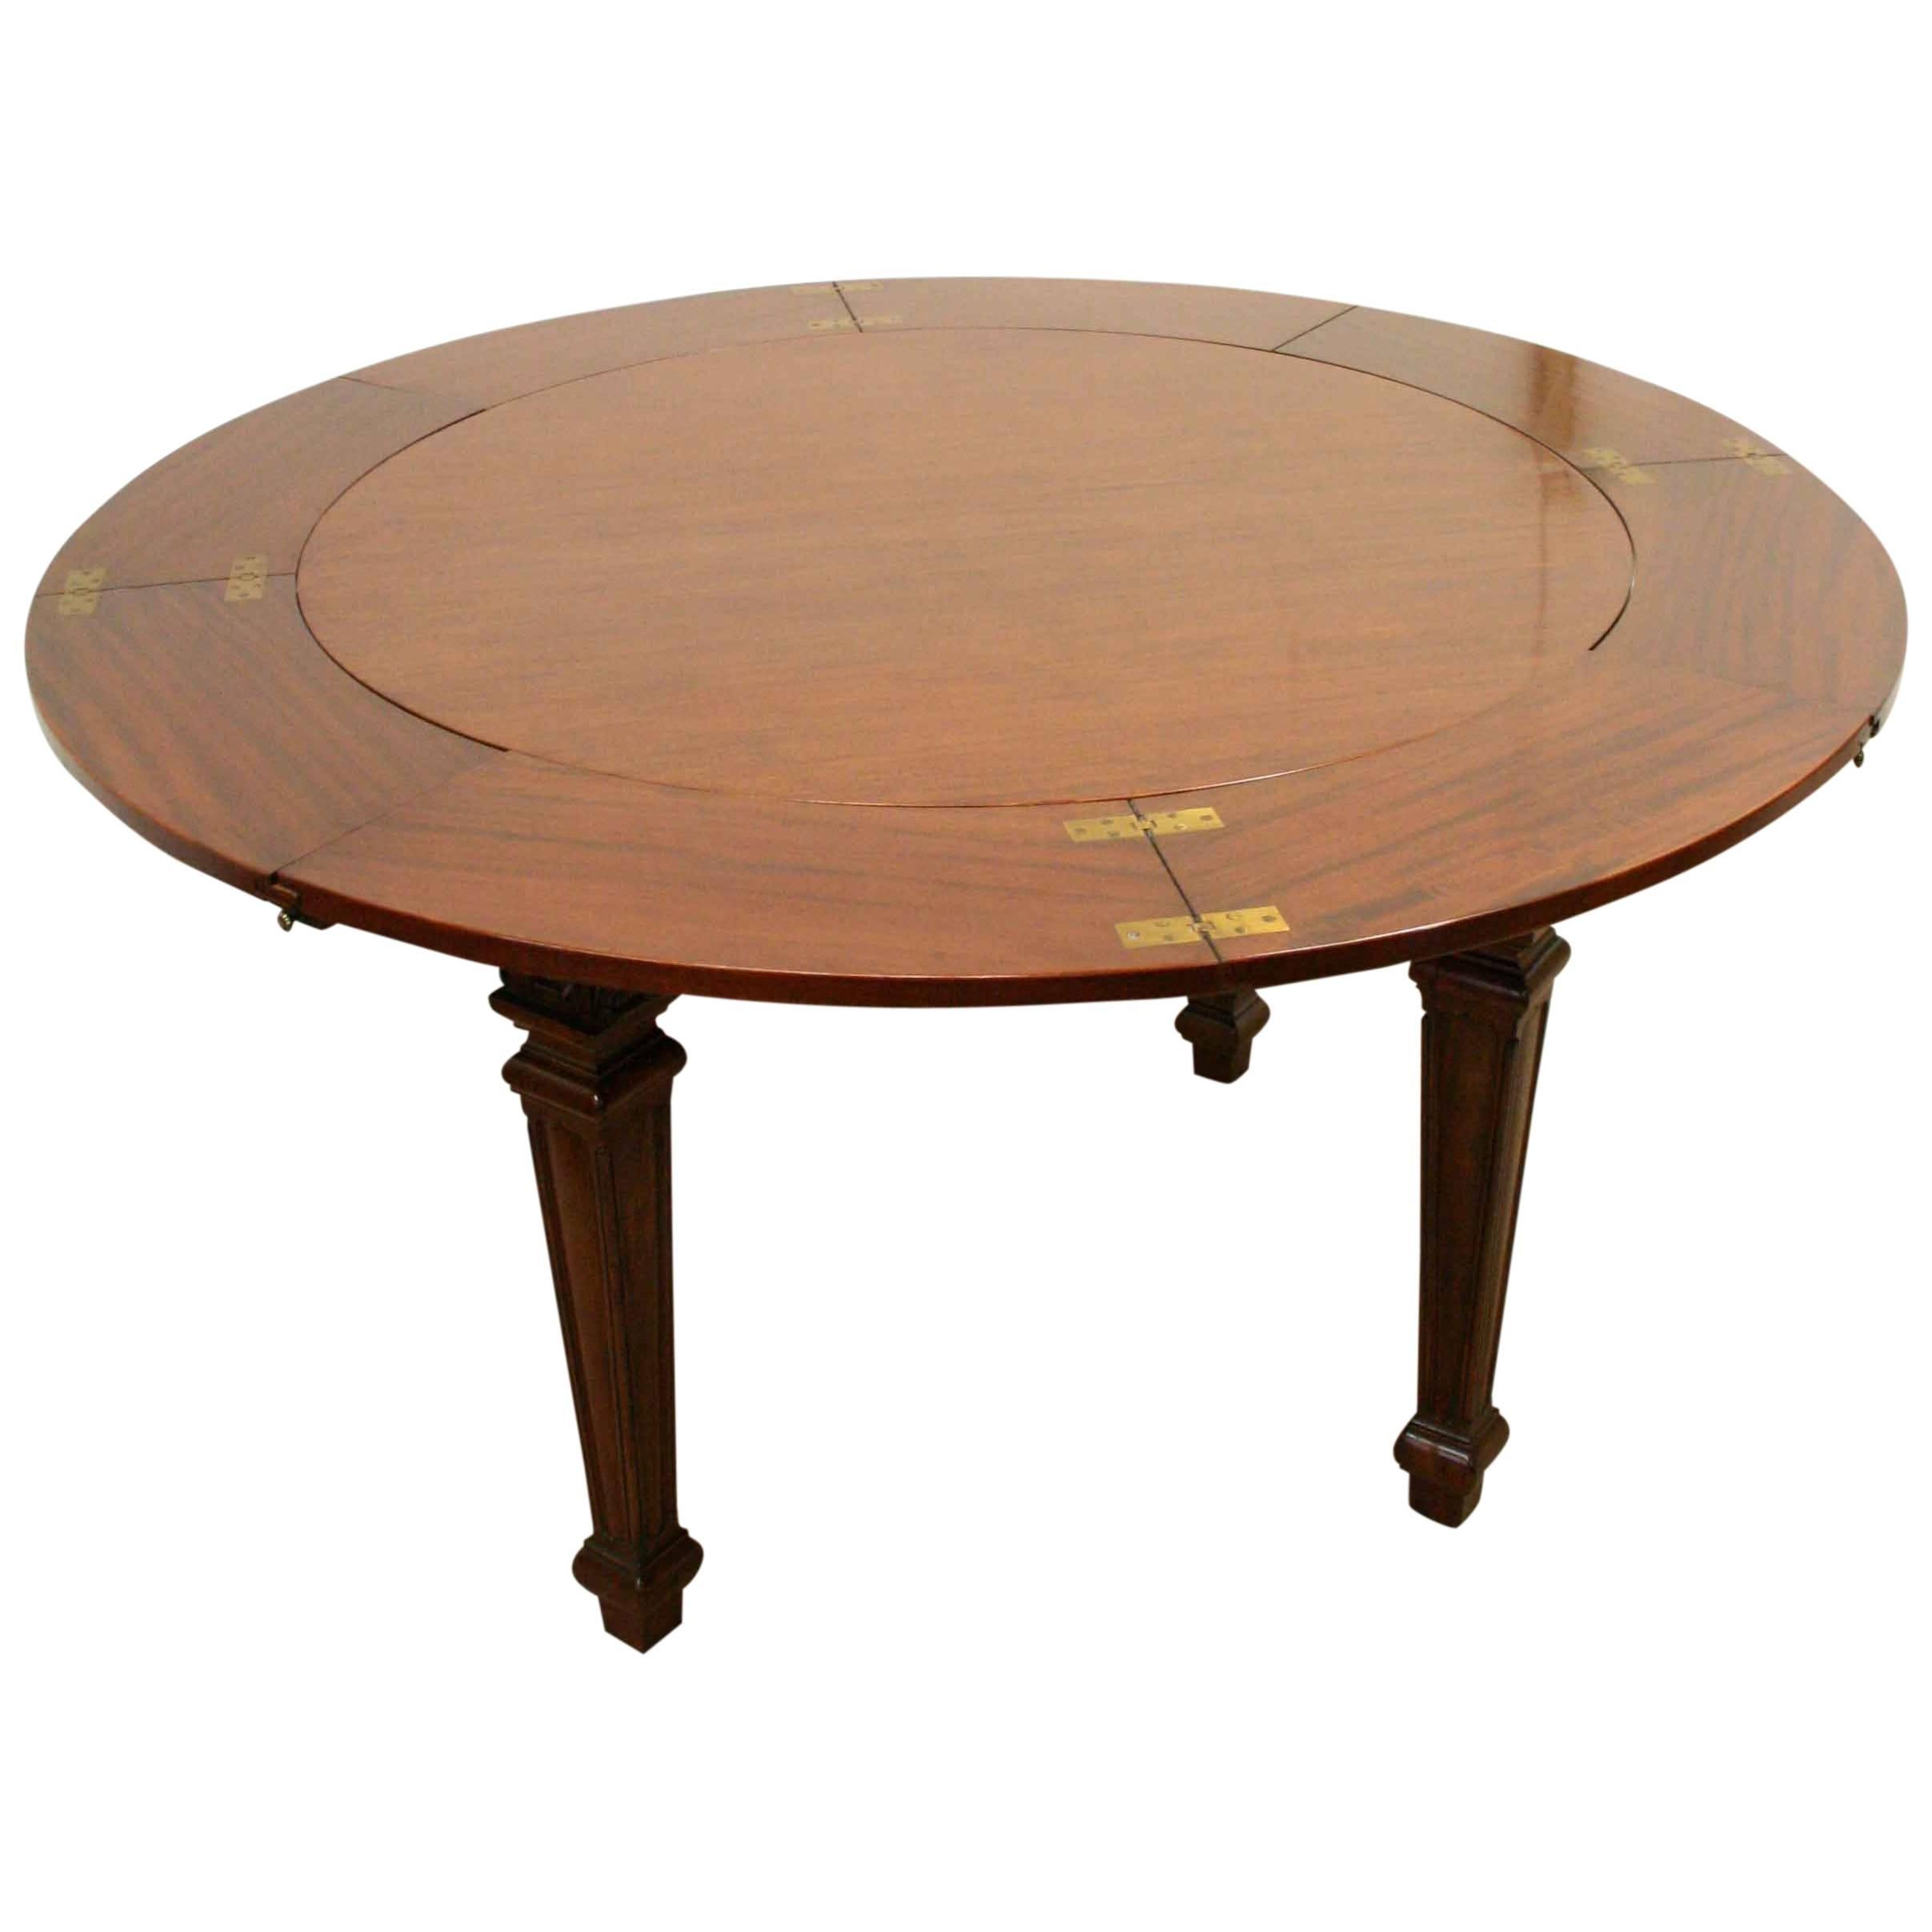 Waring & Gillows Mahogany Circular Dining Table For Sale 4